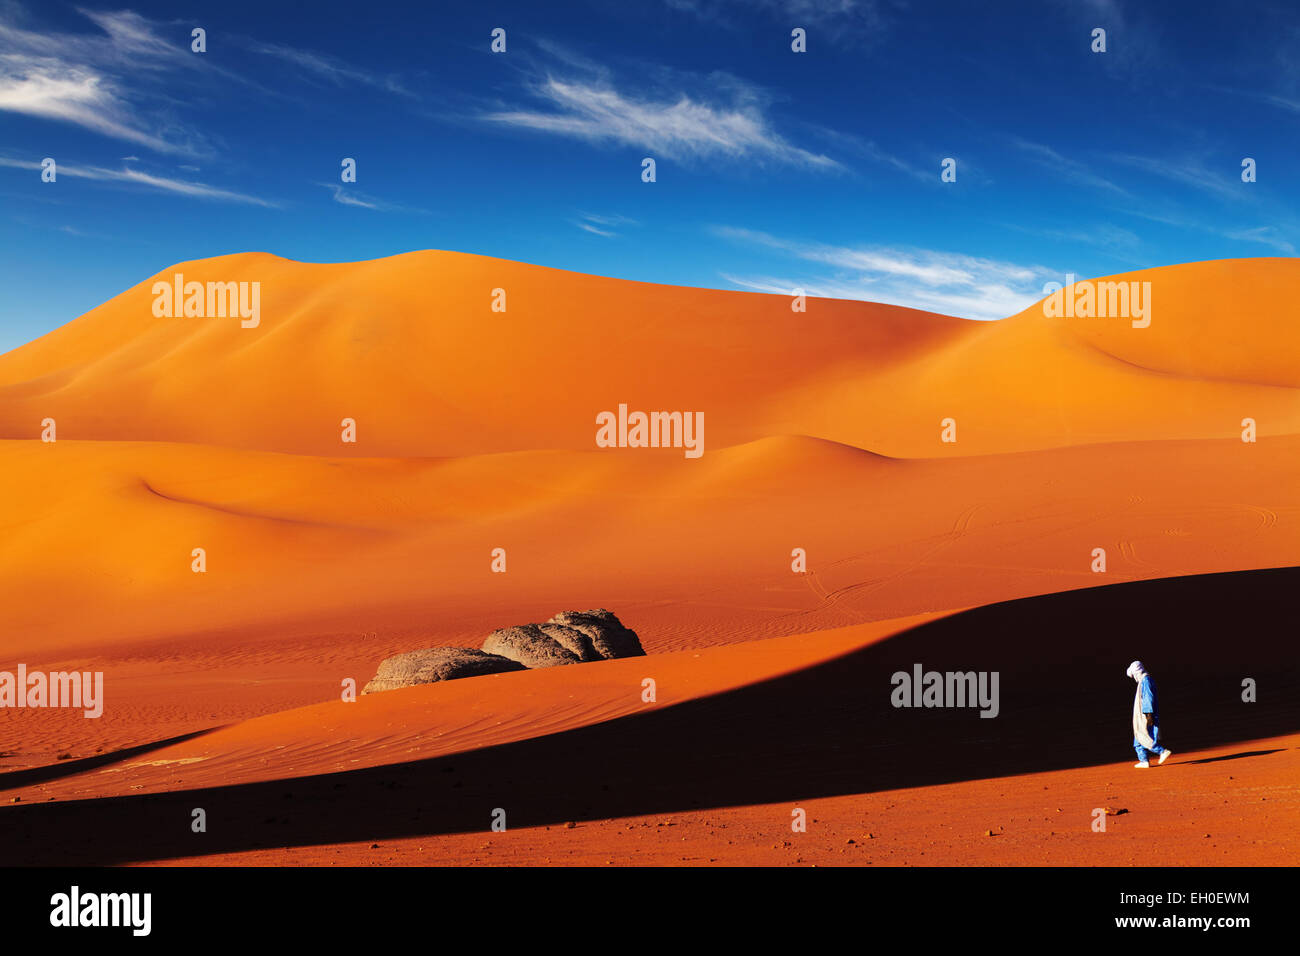 Tuareg in desert at sunset, Sahara Desert, Algeria Stock Photo